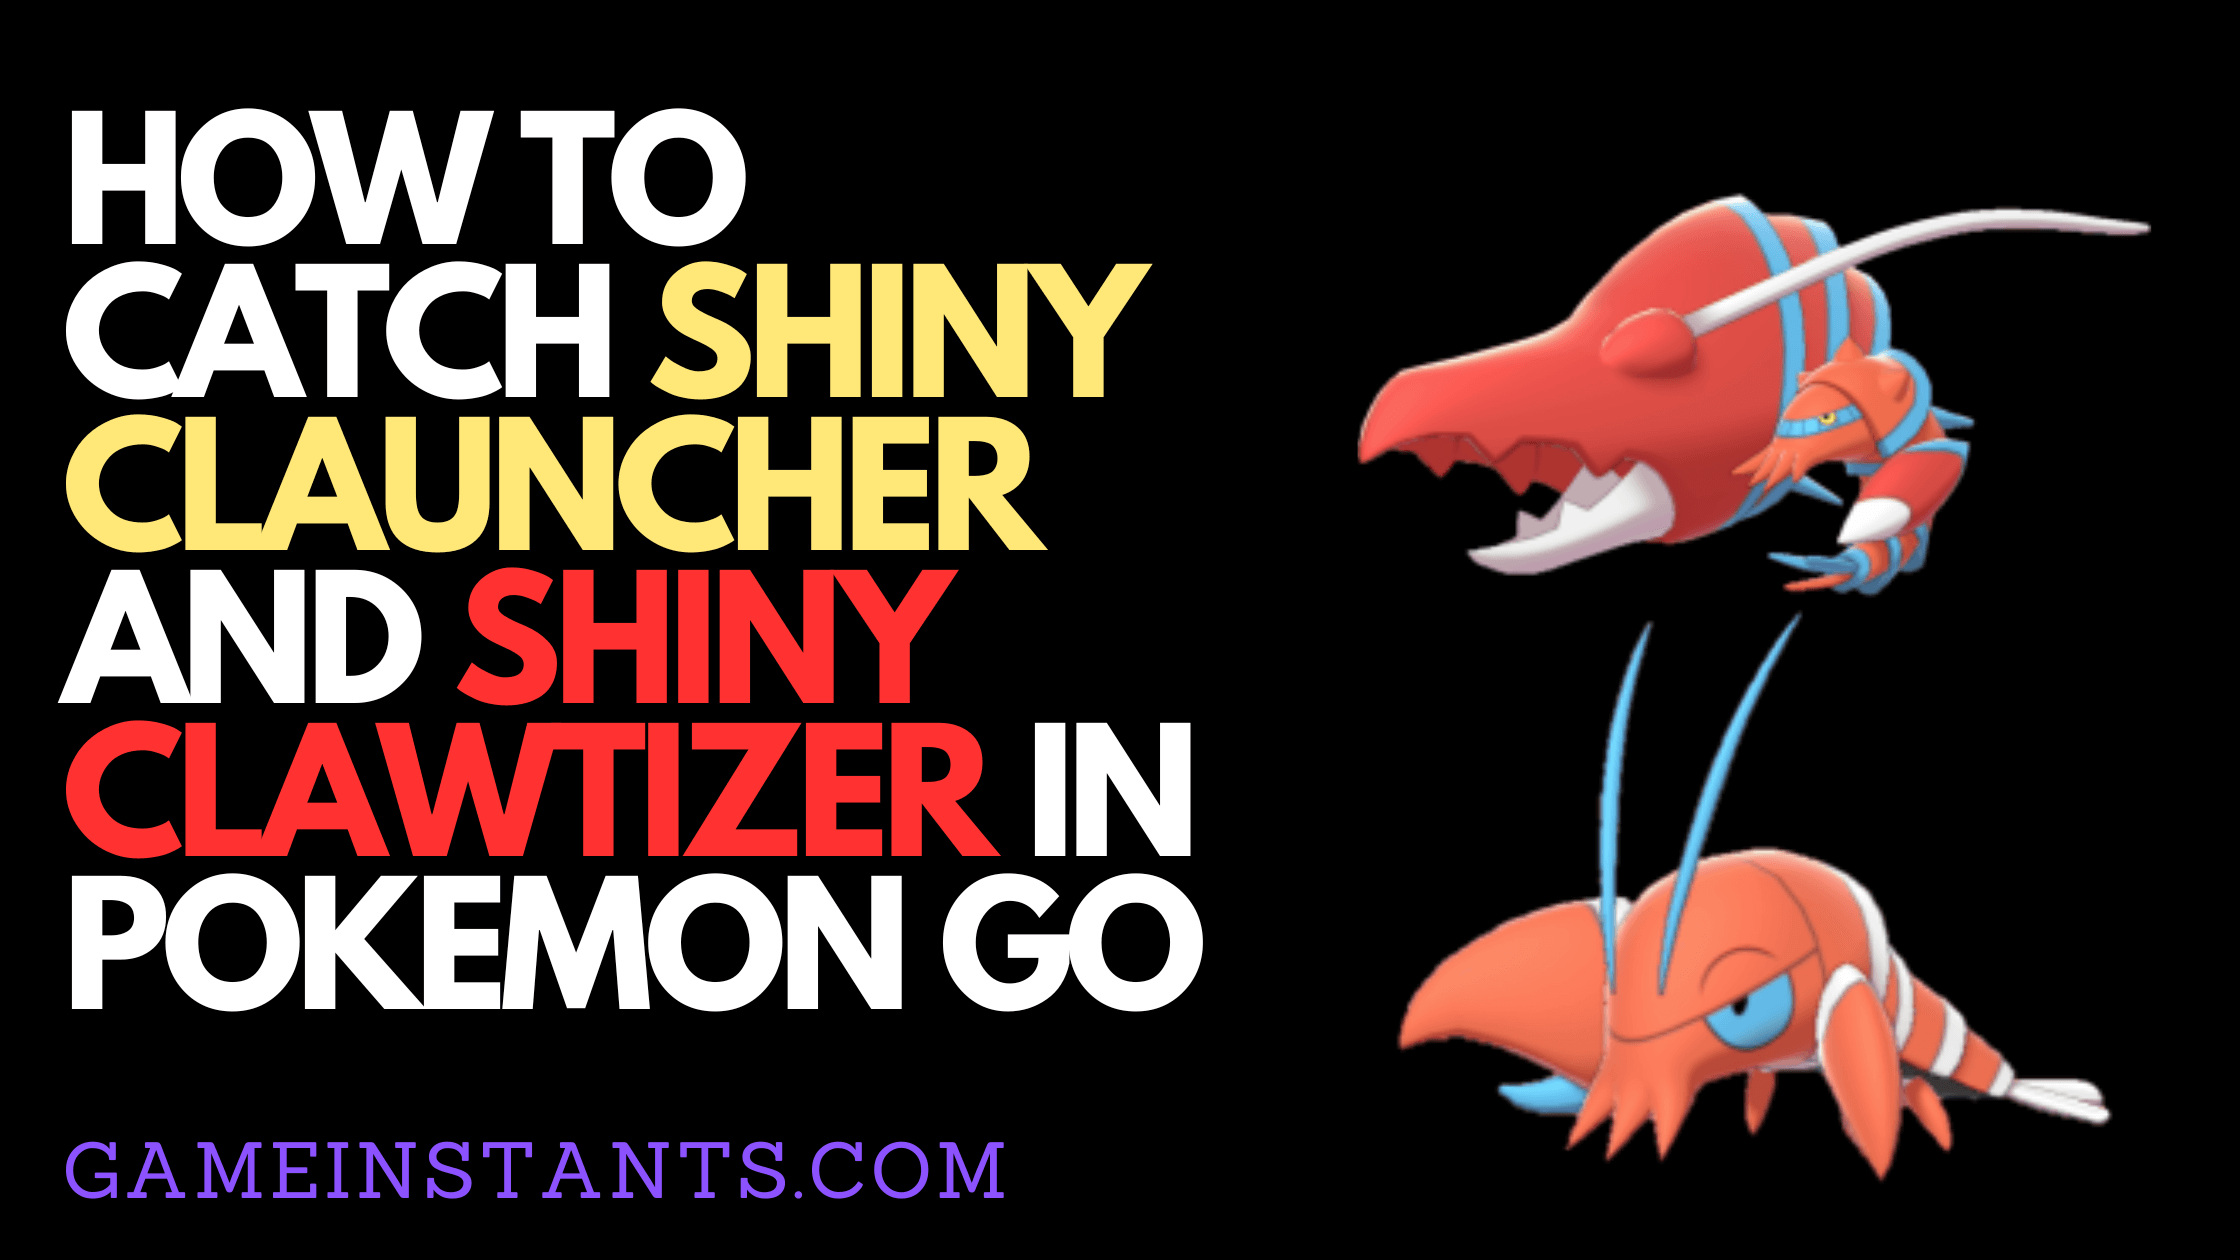 Pokemon Go Shiny Clawtizer and Shiny Clauncher